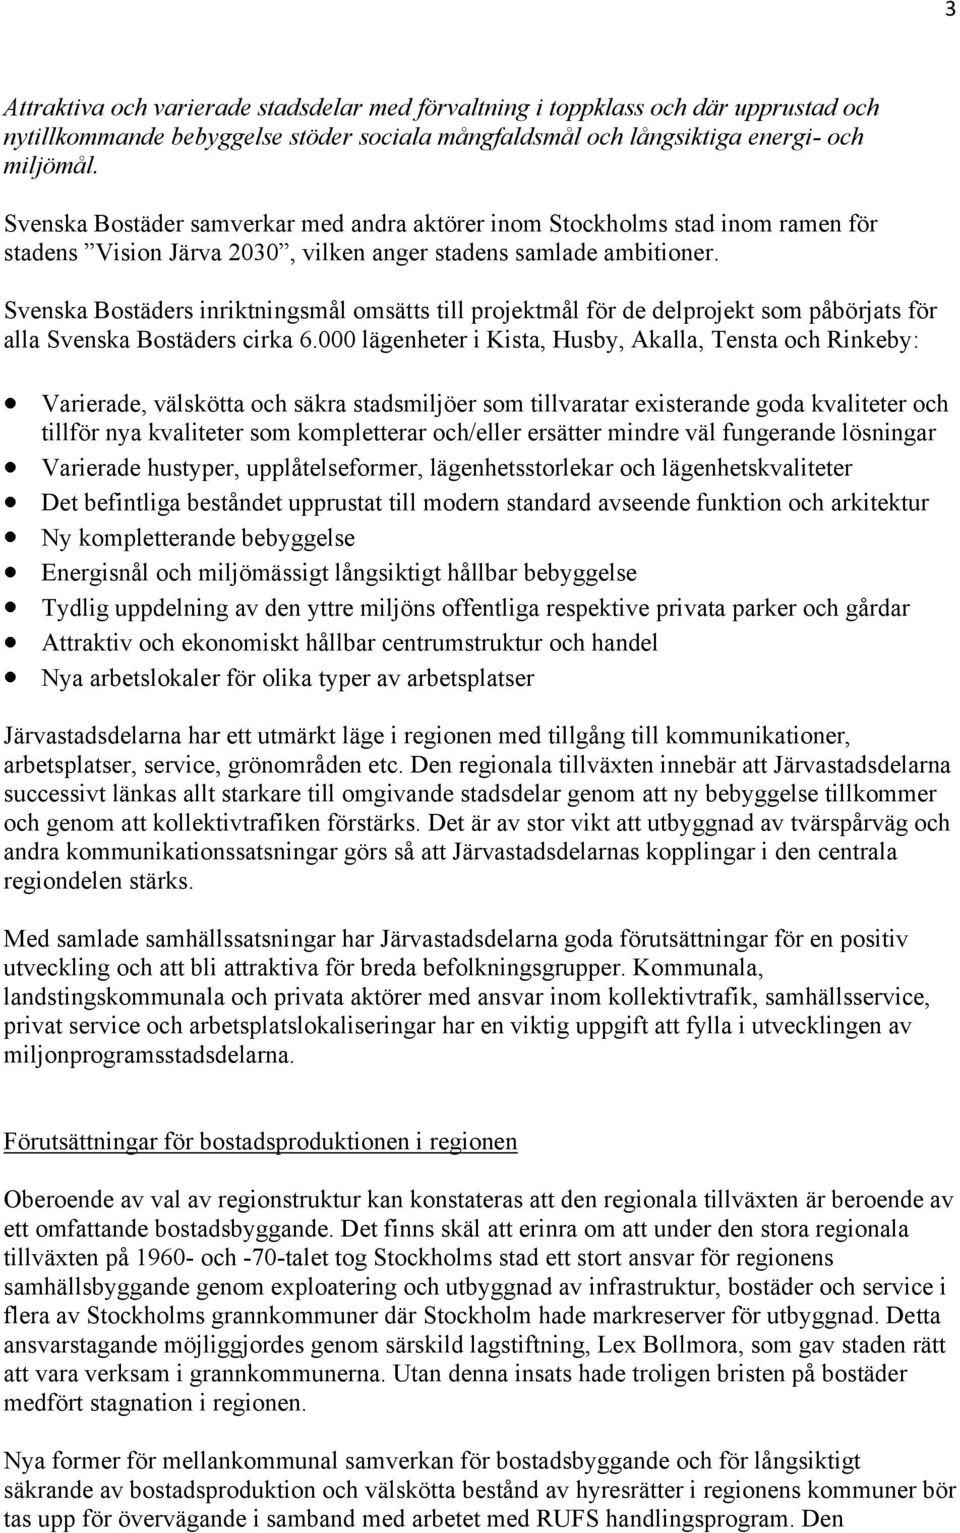 Svenska Bostäders inriktningsmål omsätts till projektmål för de delprojekt som påbörjats för alla Svenska Bostäders cirka 6.